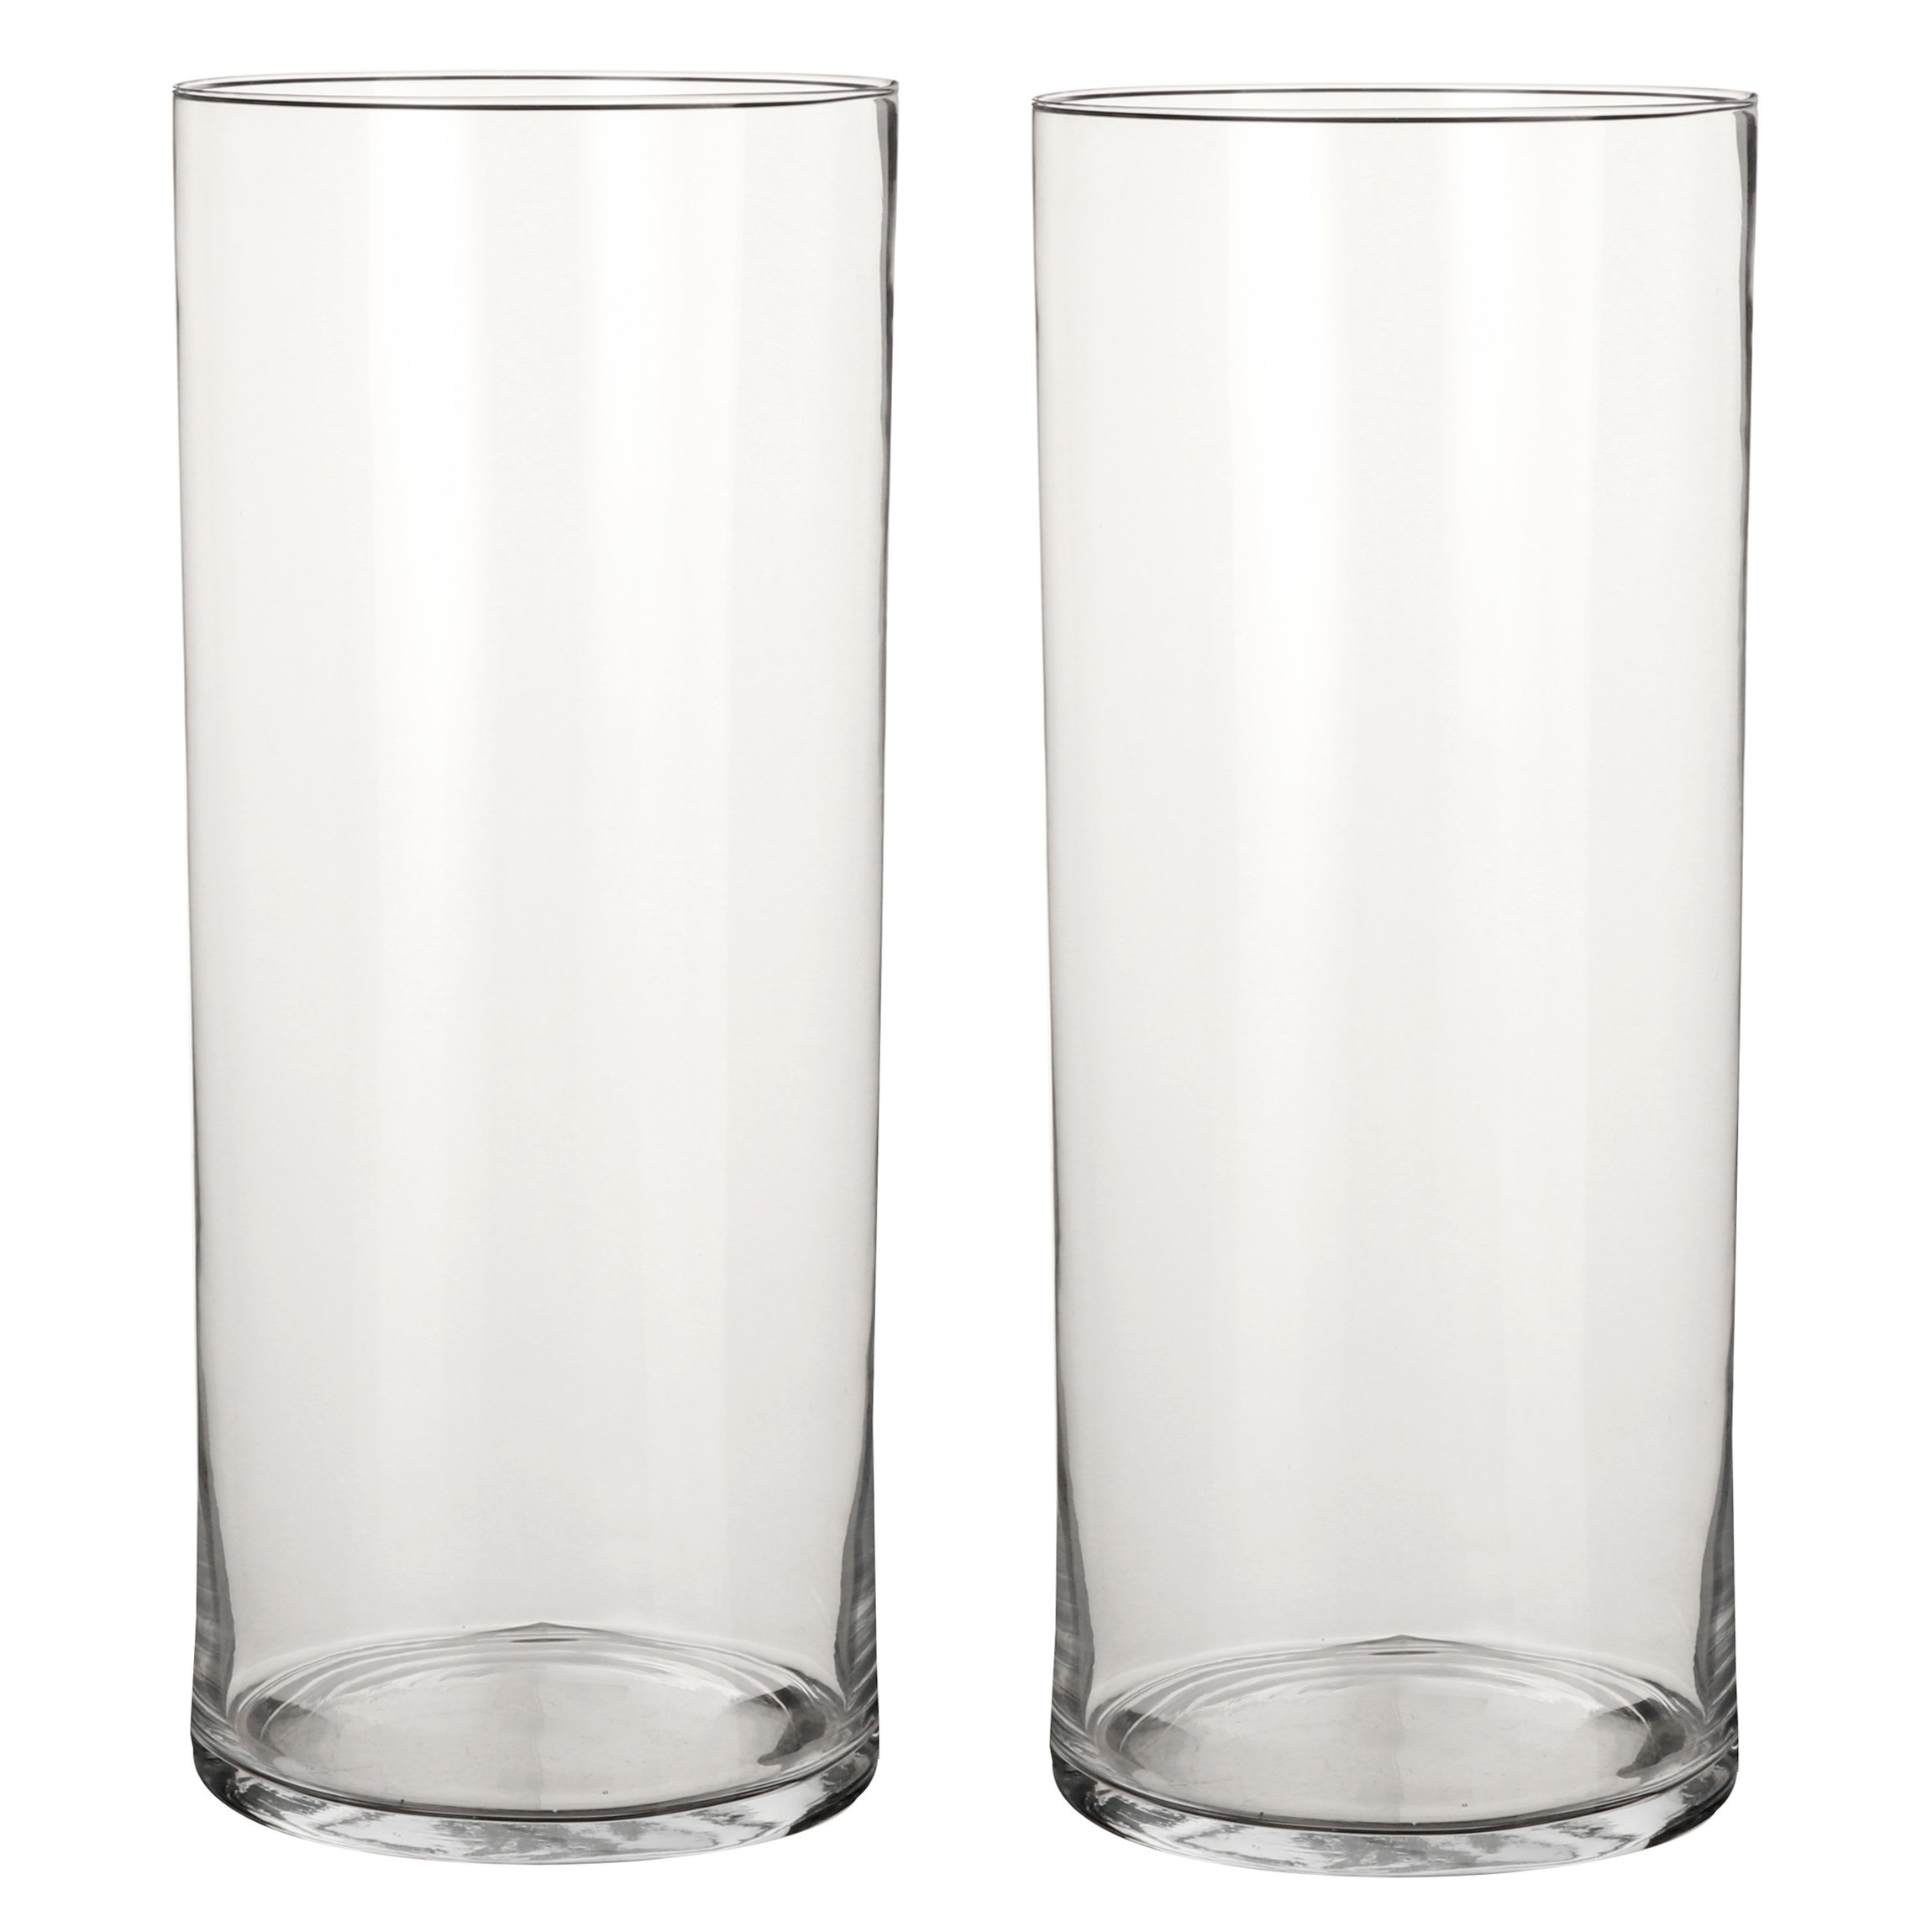 2x Glazen cilinder vaas-vazen 48 cm rond